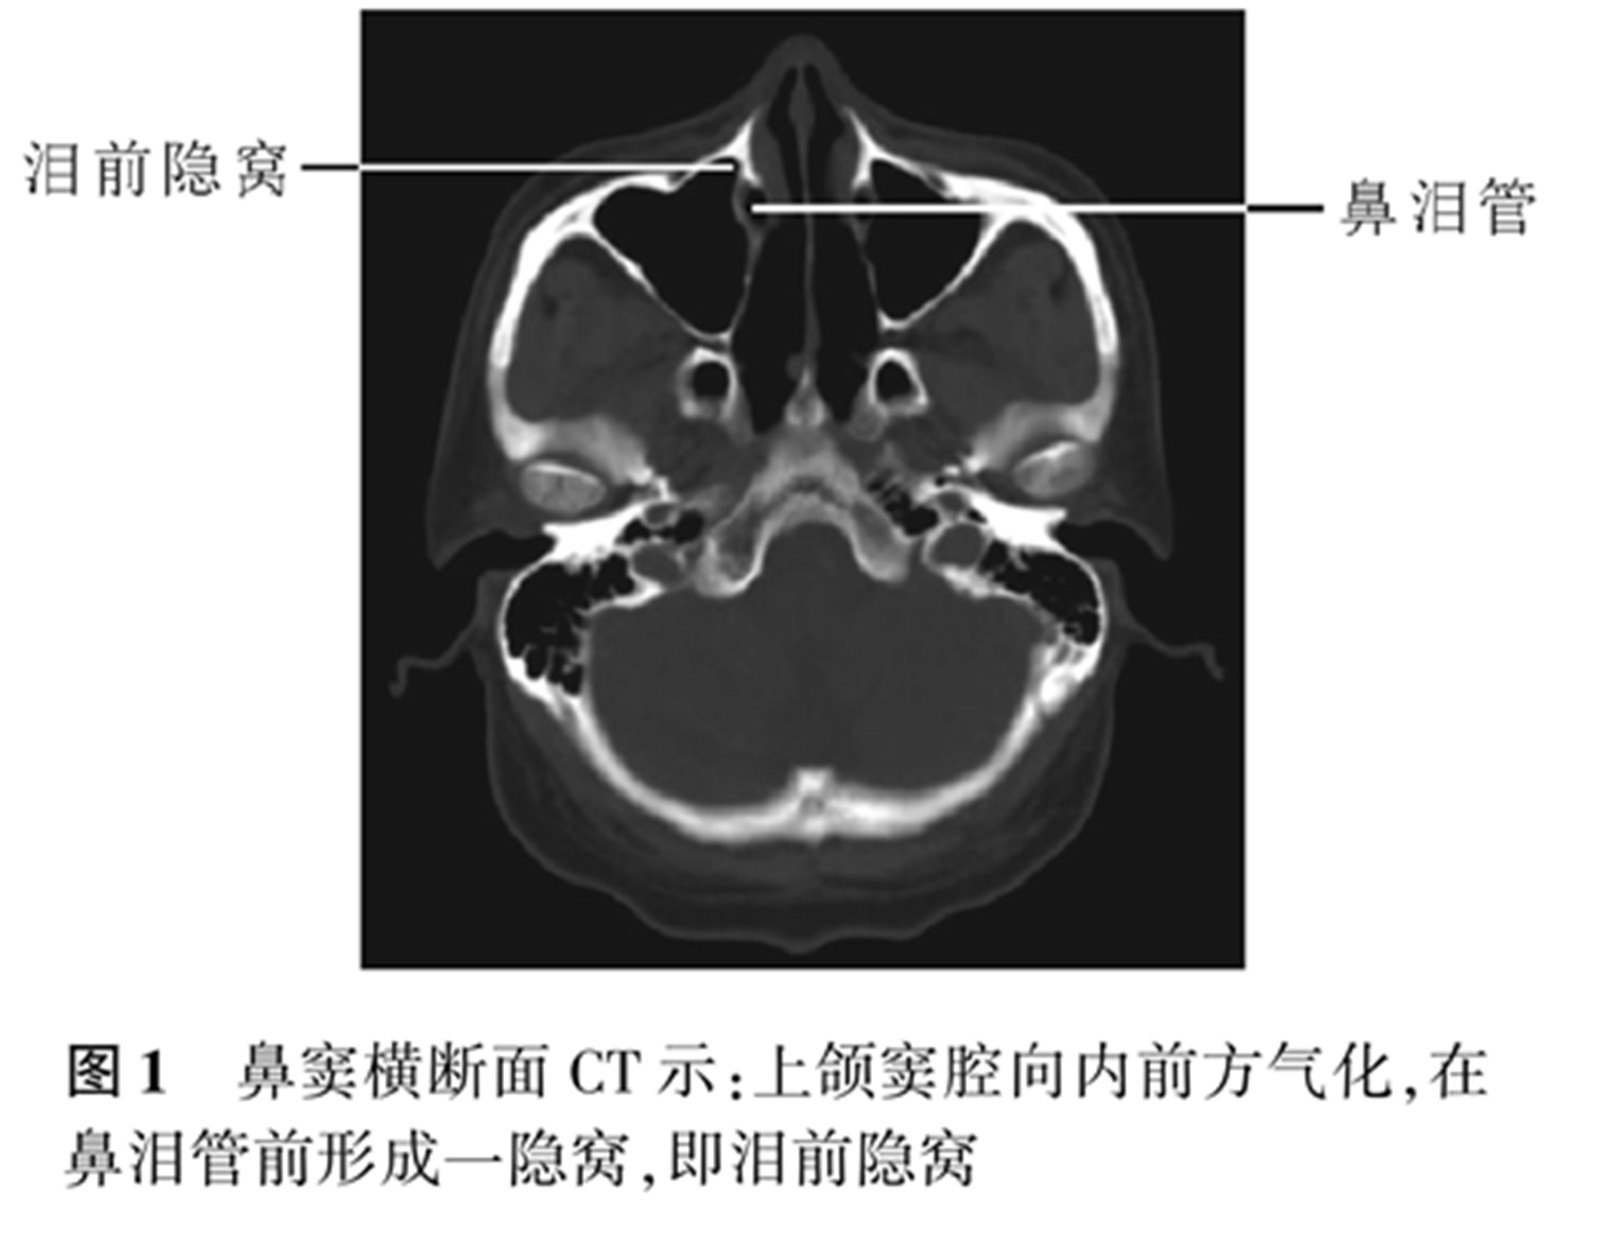 称之为泪前隐窝,可在鼻窦水平位 ct 上清晰显示(图 1)1,泪前隐窝解剖